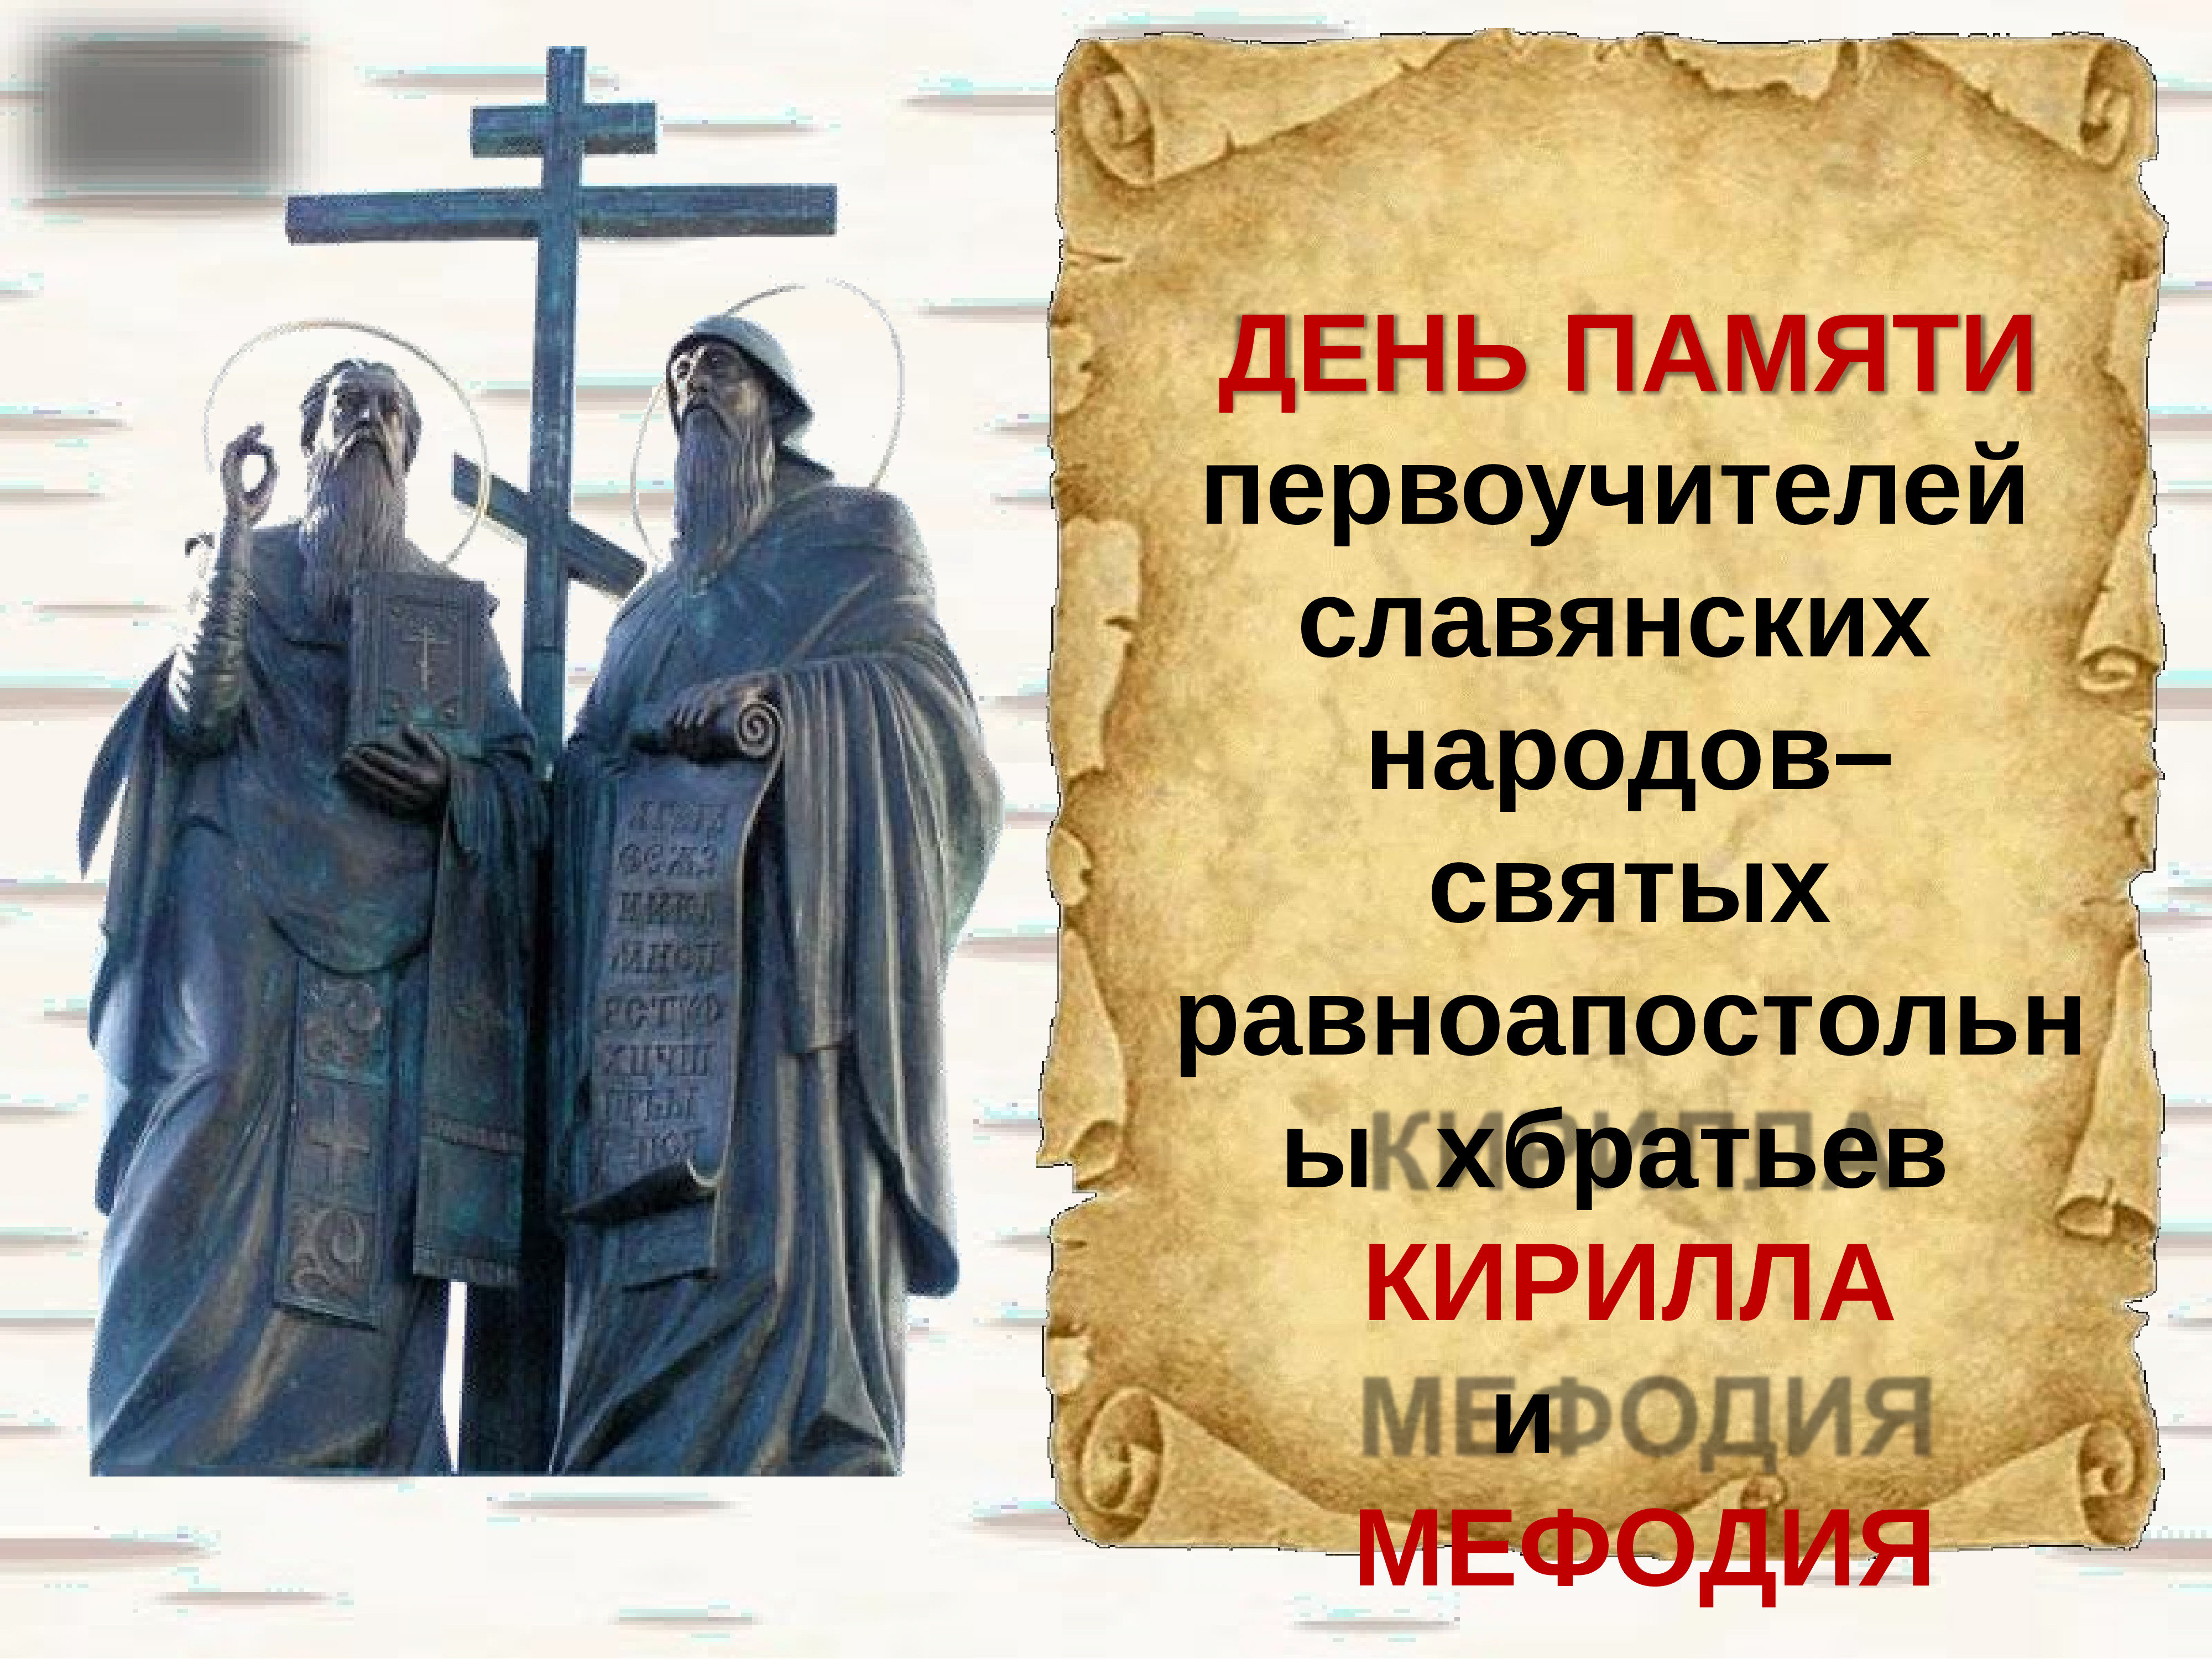 Праздник славянской письменности Кирилл и Мефодий